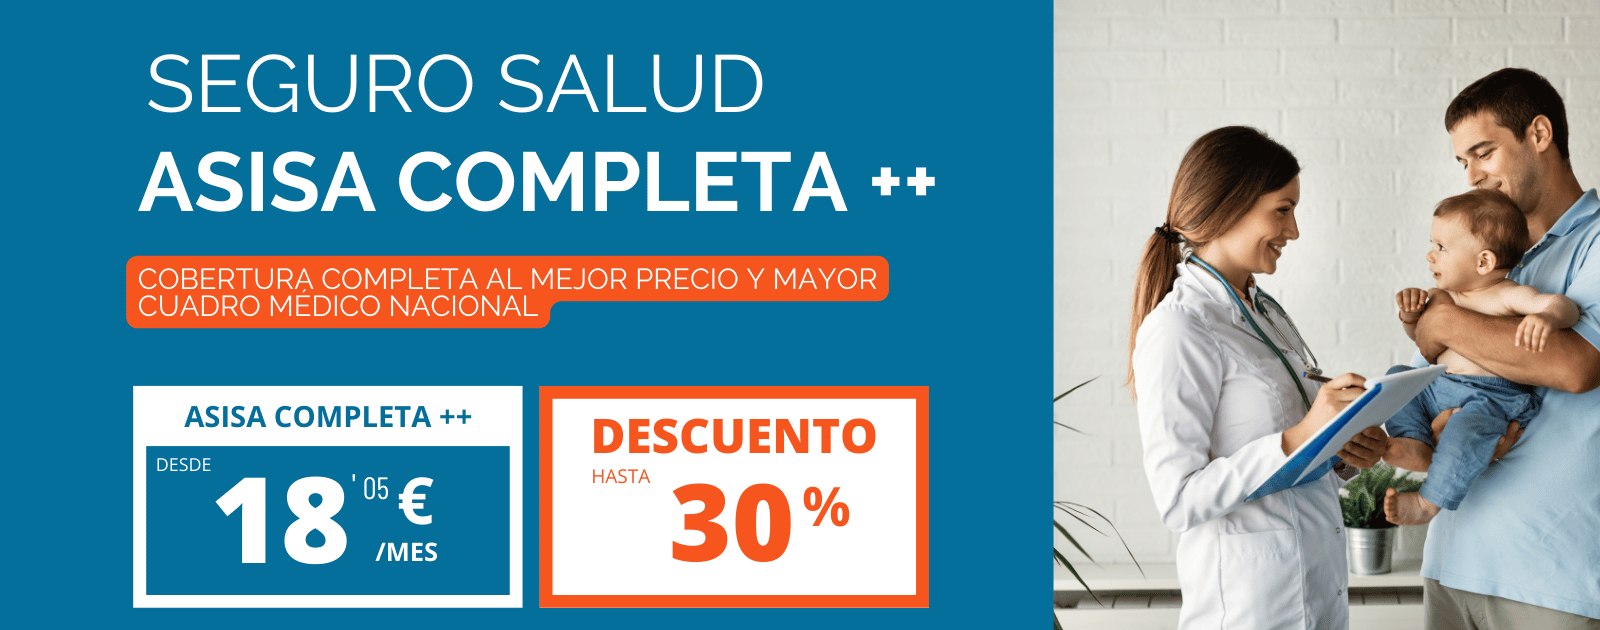 ASISA COMPLETA ++ SEGURO SALUD COMPLETO CON HASTA 30% DESCUENTO